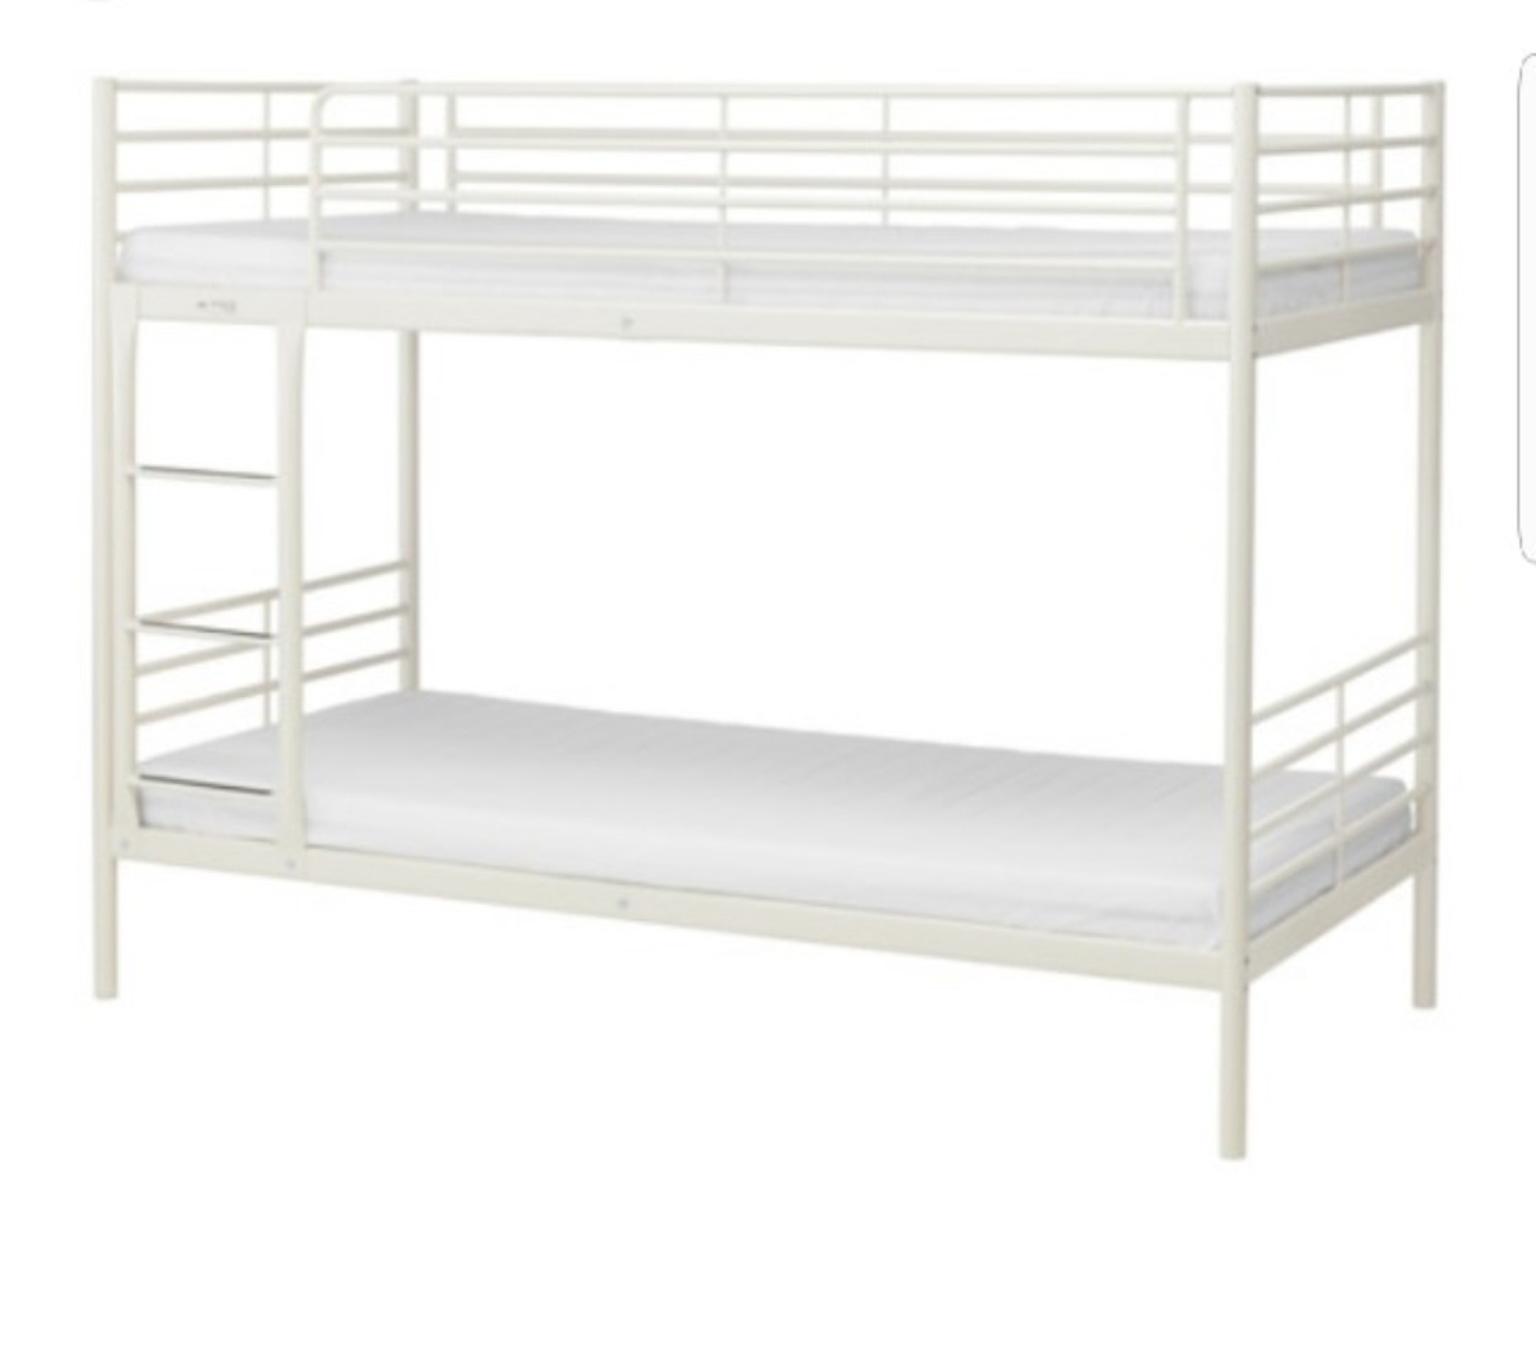 Ikea Svarta Bunk Bed White In E7 London, Ikea Metal Frame Loft Bed Instructions